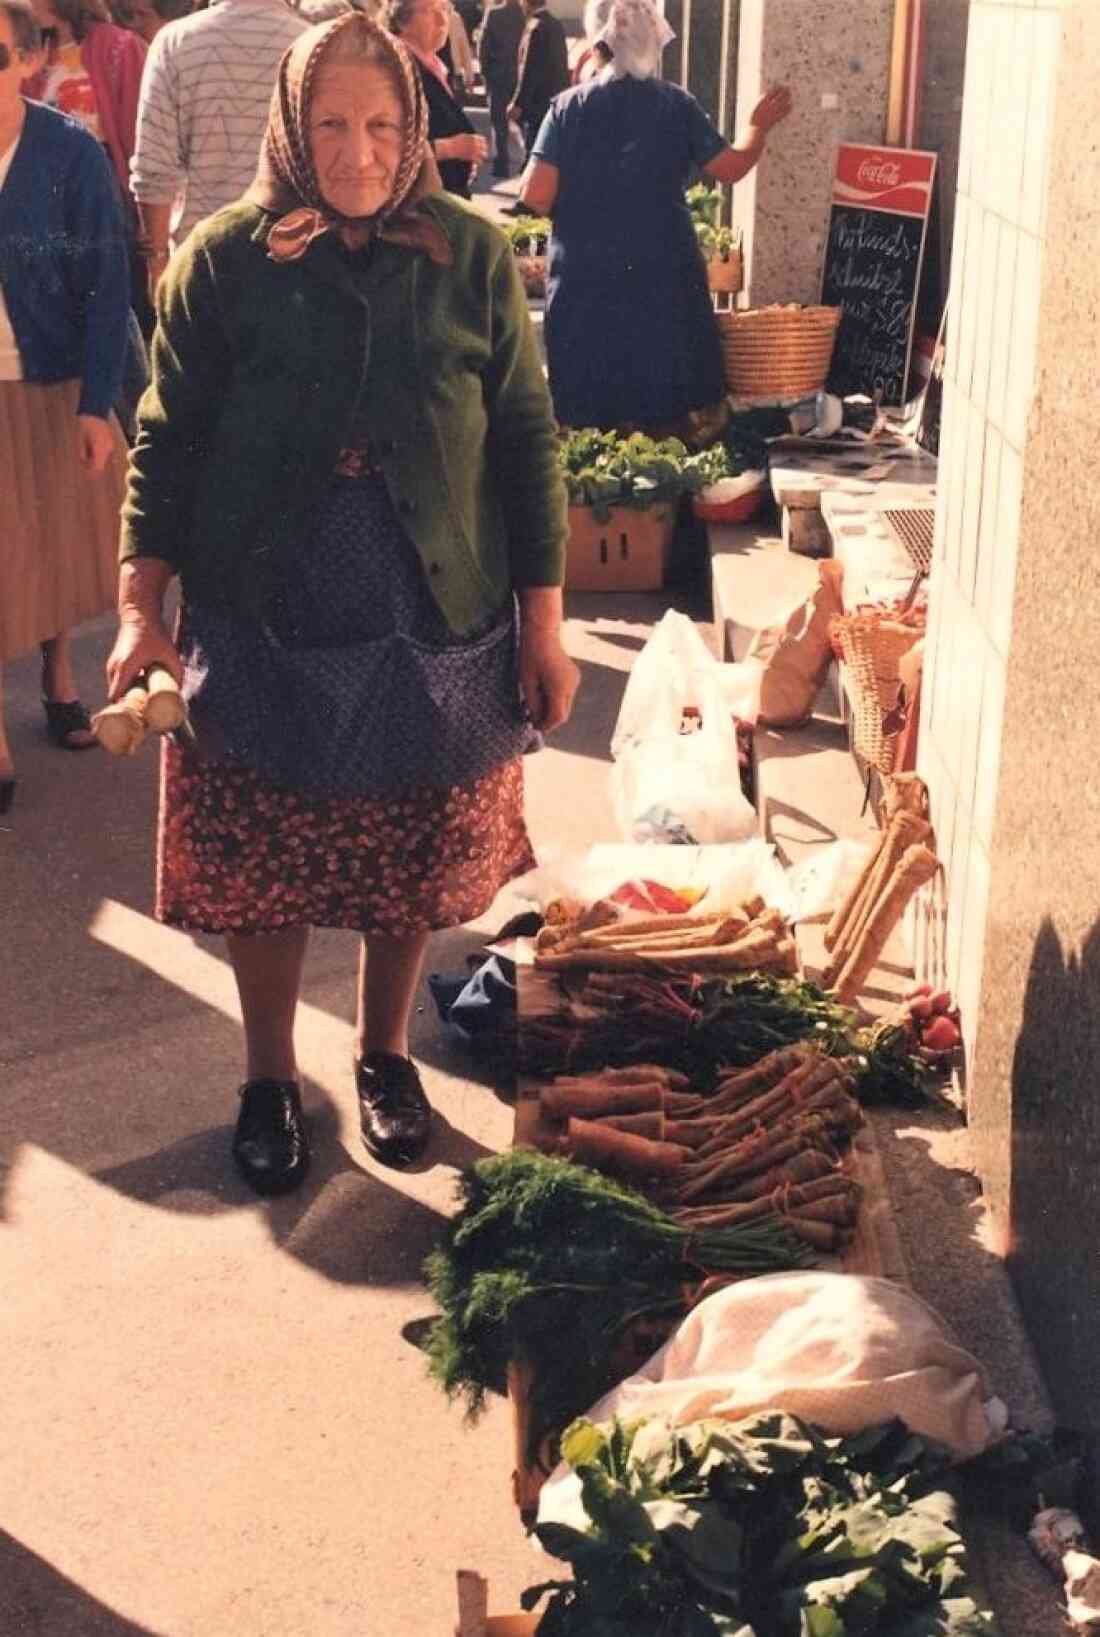 Wochenmarkt: eine typische Riedlingsdorfer Marktfrau